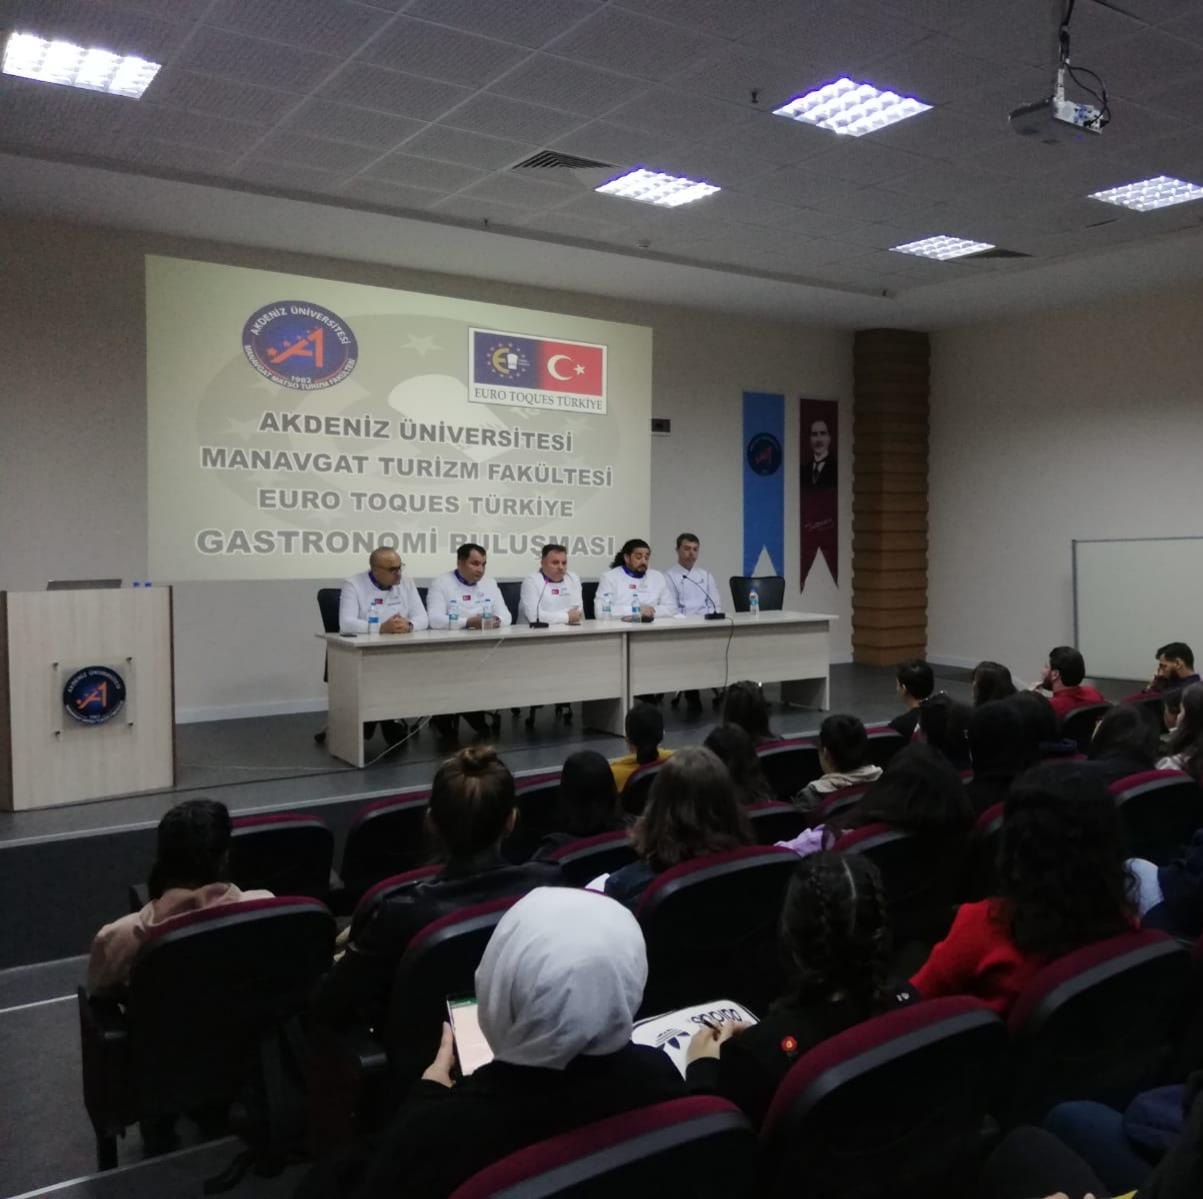 Manavgat Turizm Fakültesi ve Euro Toques Türkiye (Avrupa Aşçılar Birliği) temsilciliği etkinliği